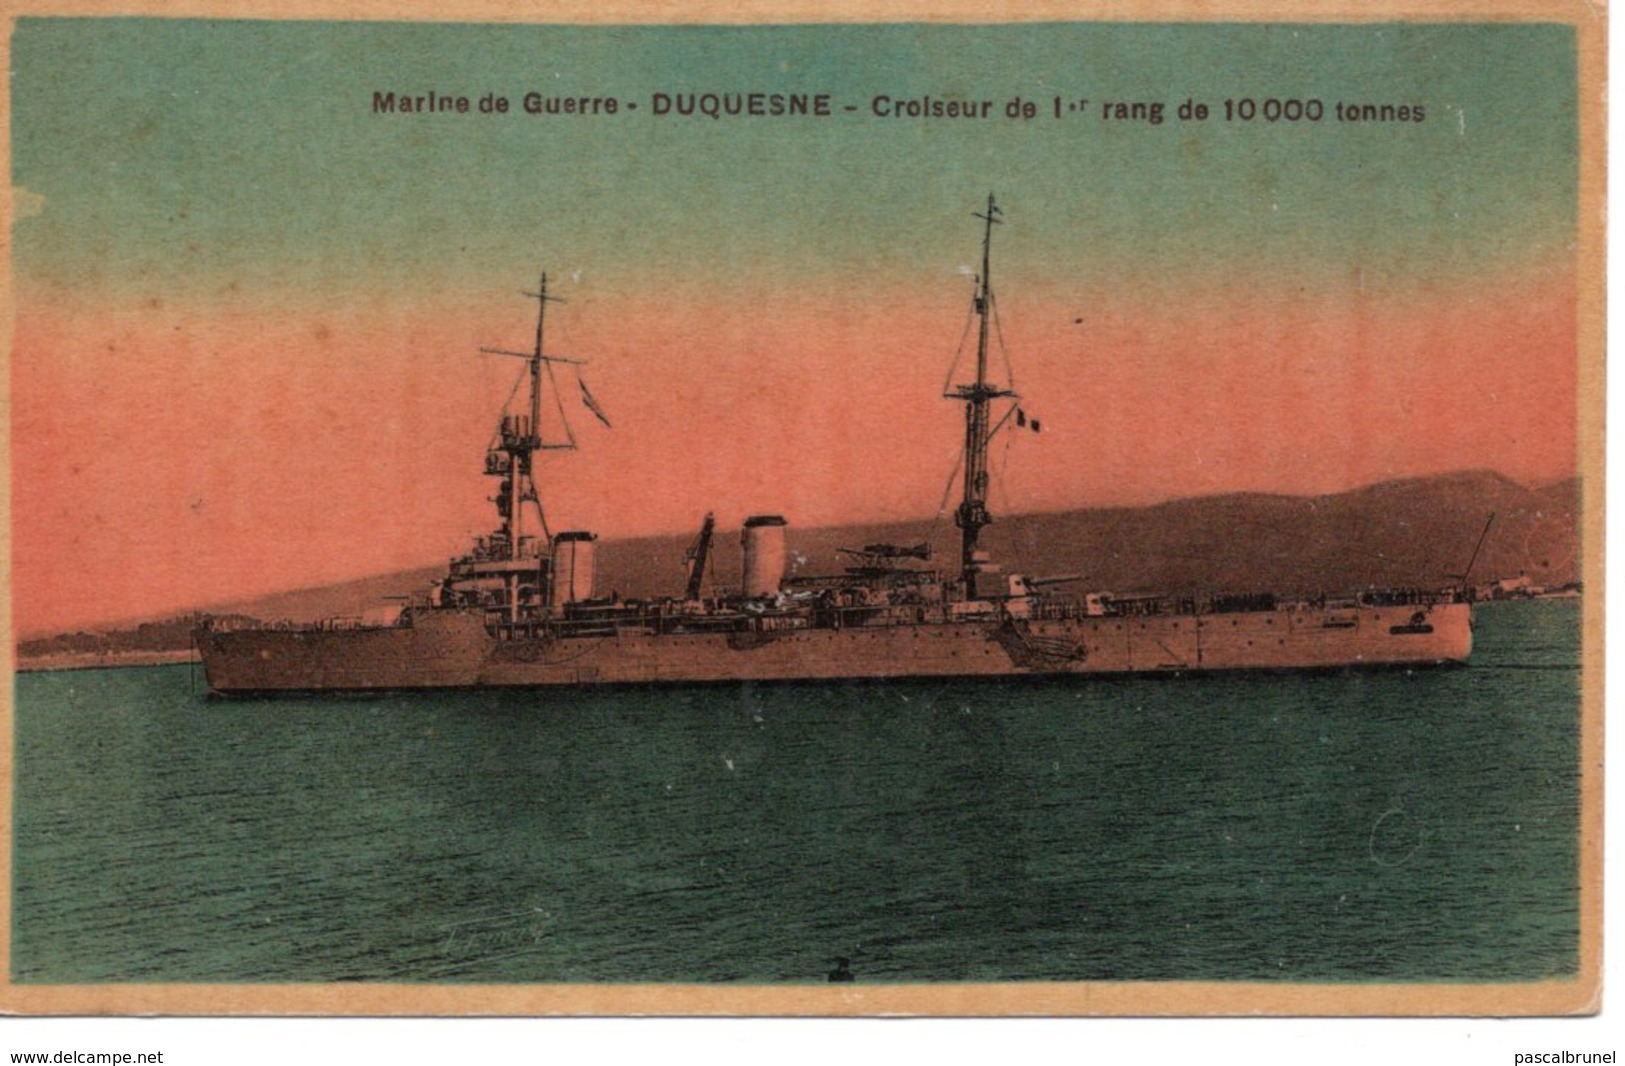 MARINE DE GUERRE - DUQUESNE - CROISEUR DE PREMIER RANG - Warships